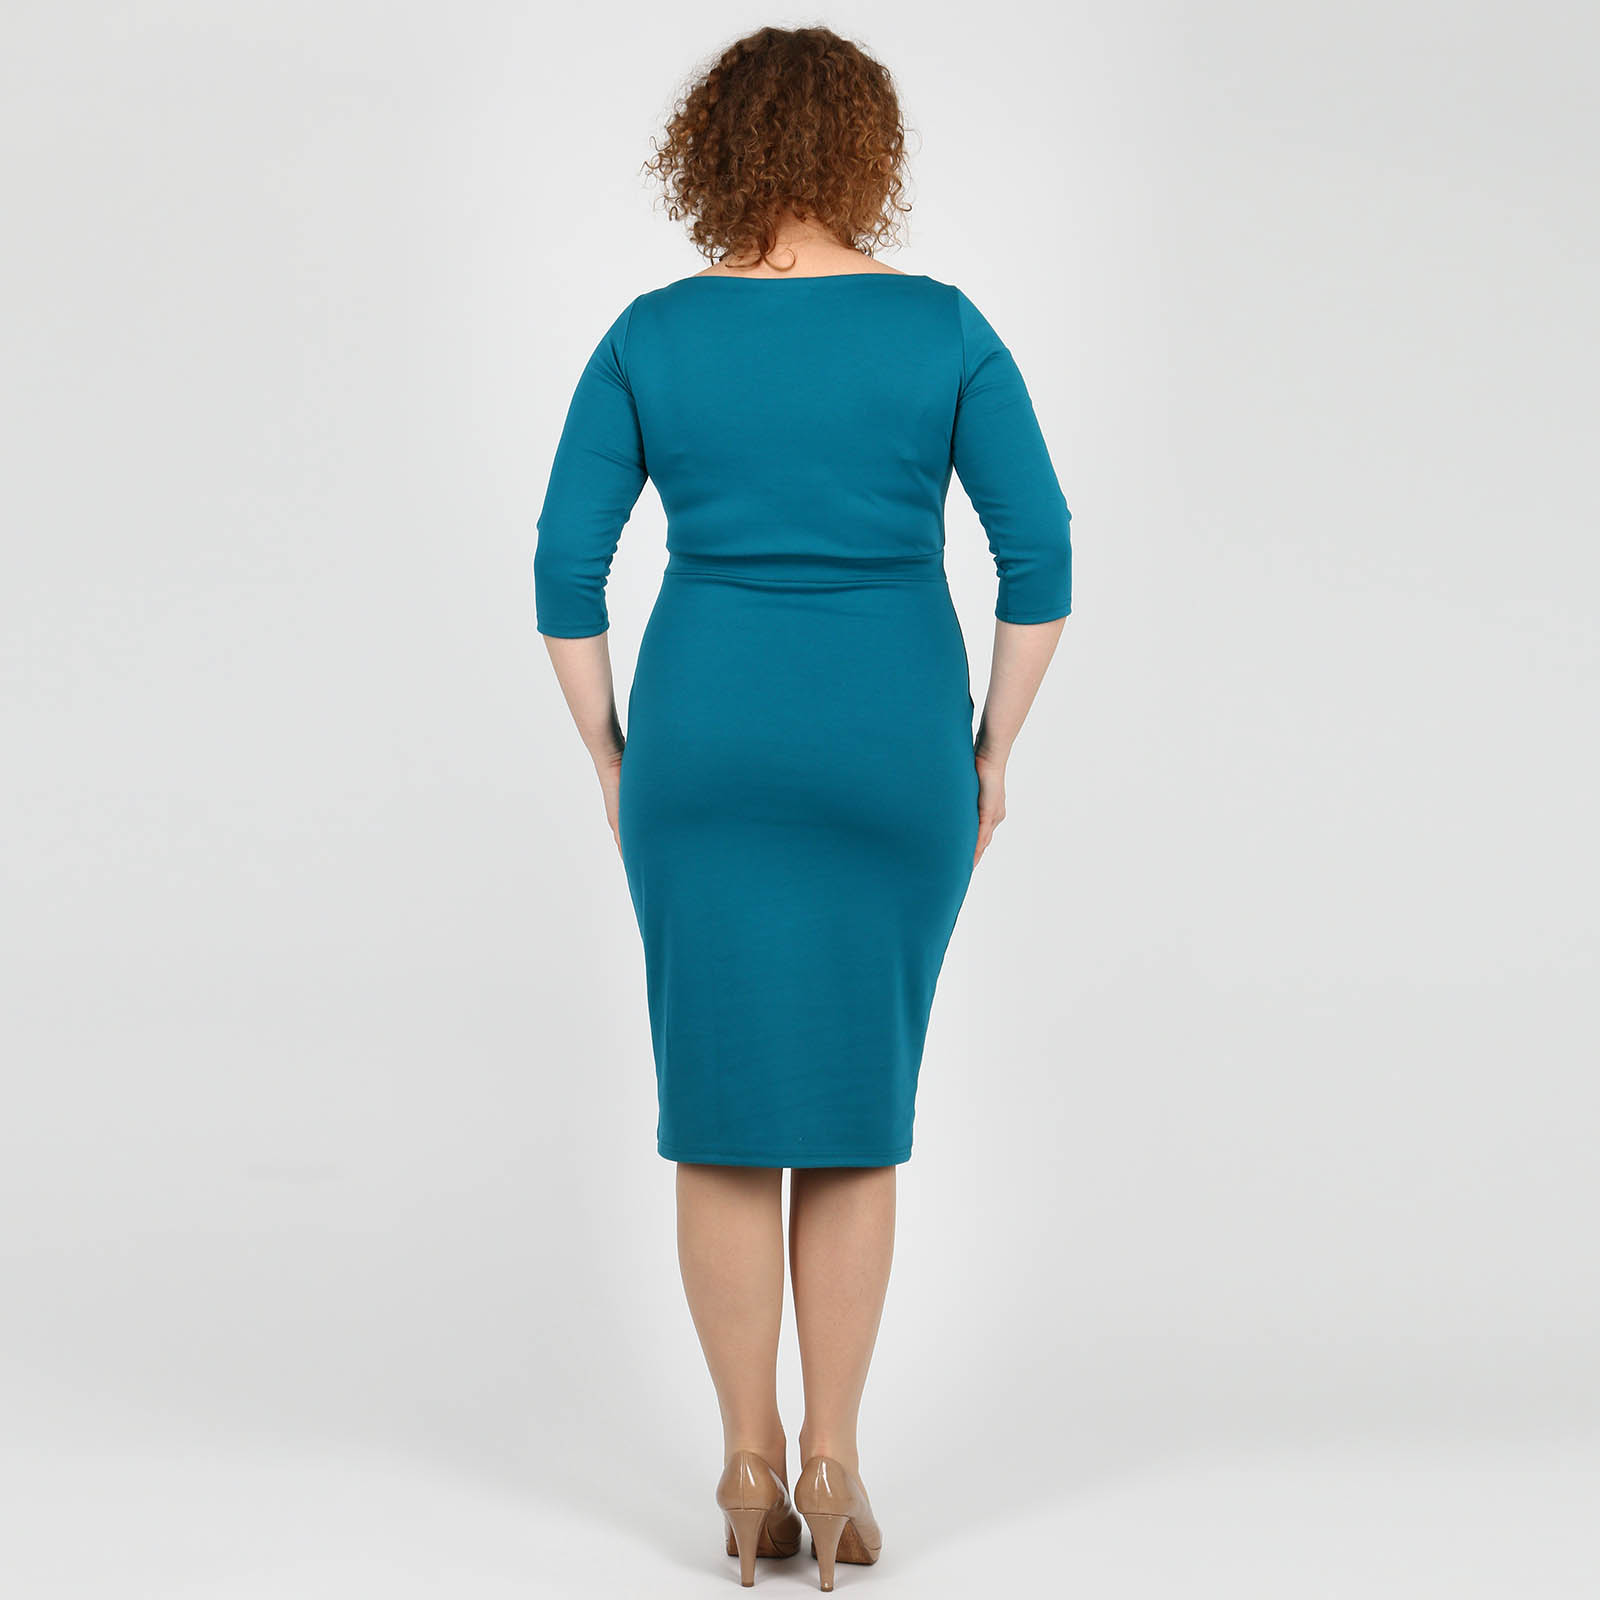 Платье с аппликацией Bianka Modeno, размер 48, цвет зеленый - фото 10